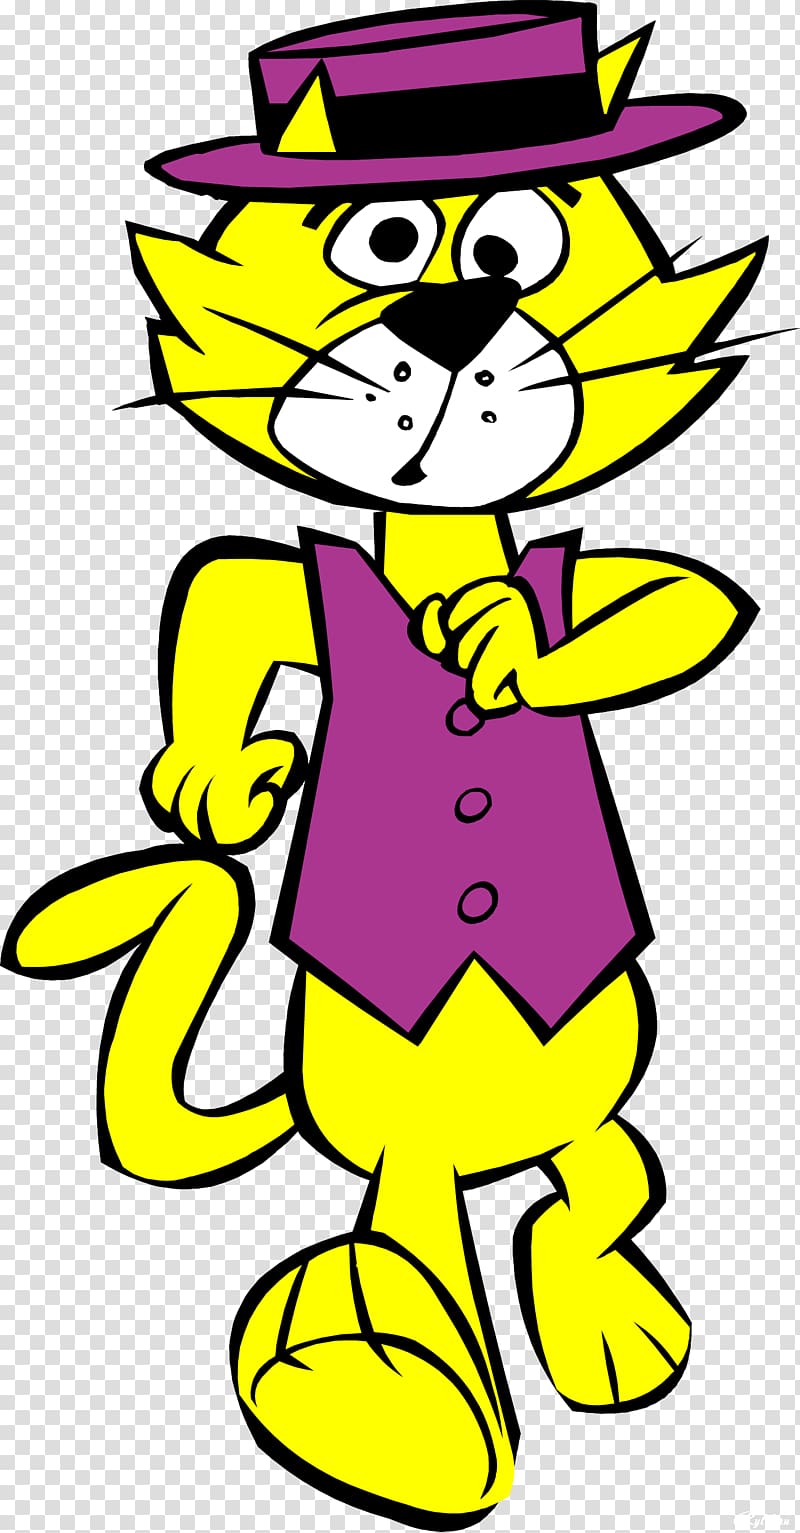 Cat Cartoon Character Hanna-Barbera, cat transparent background PNG clipart